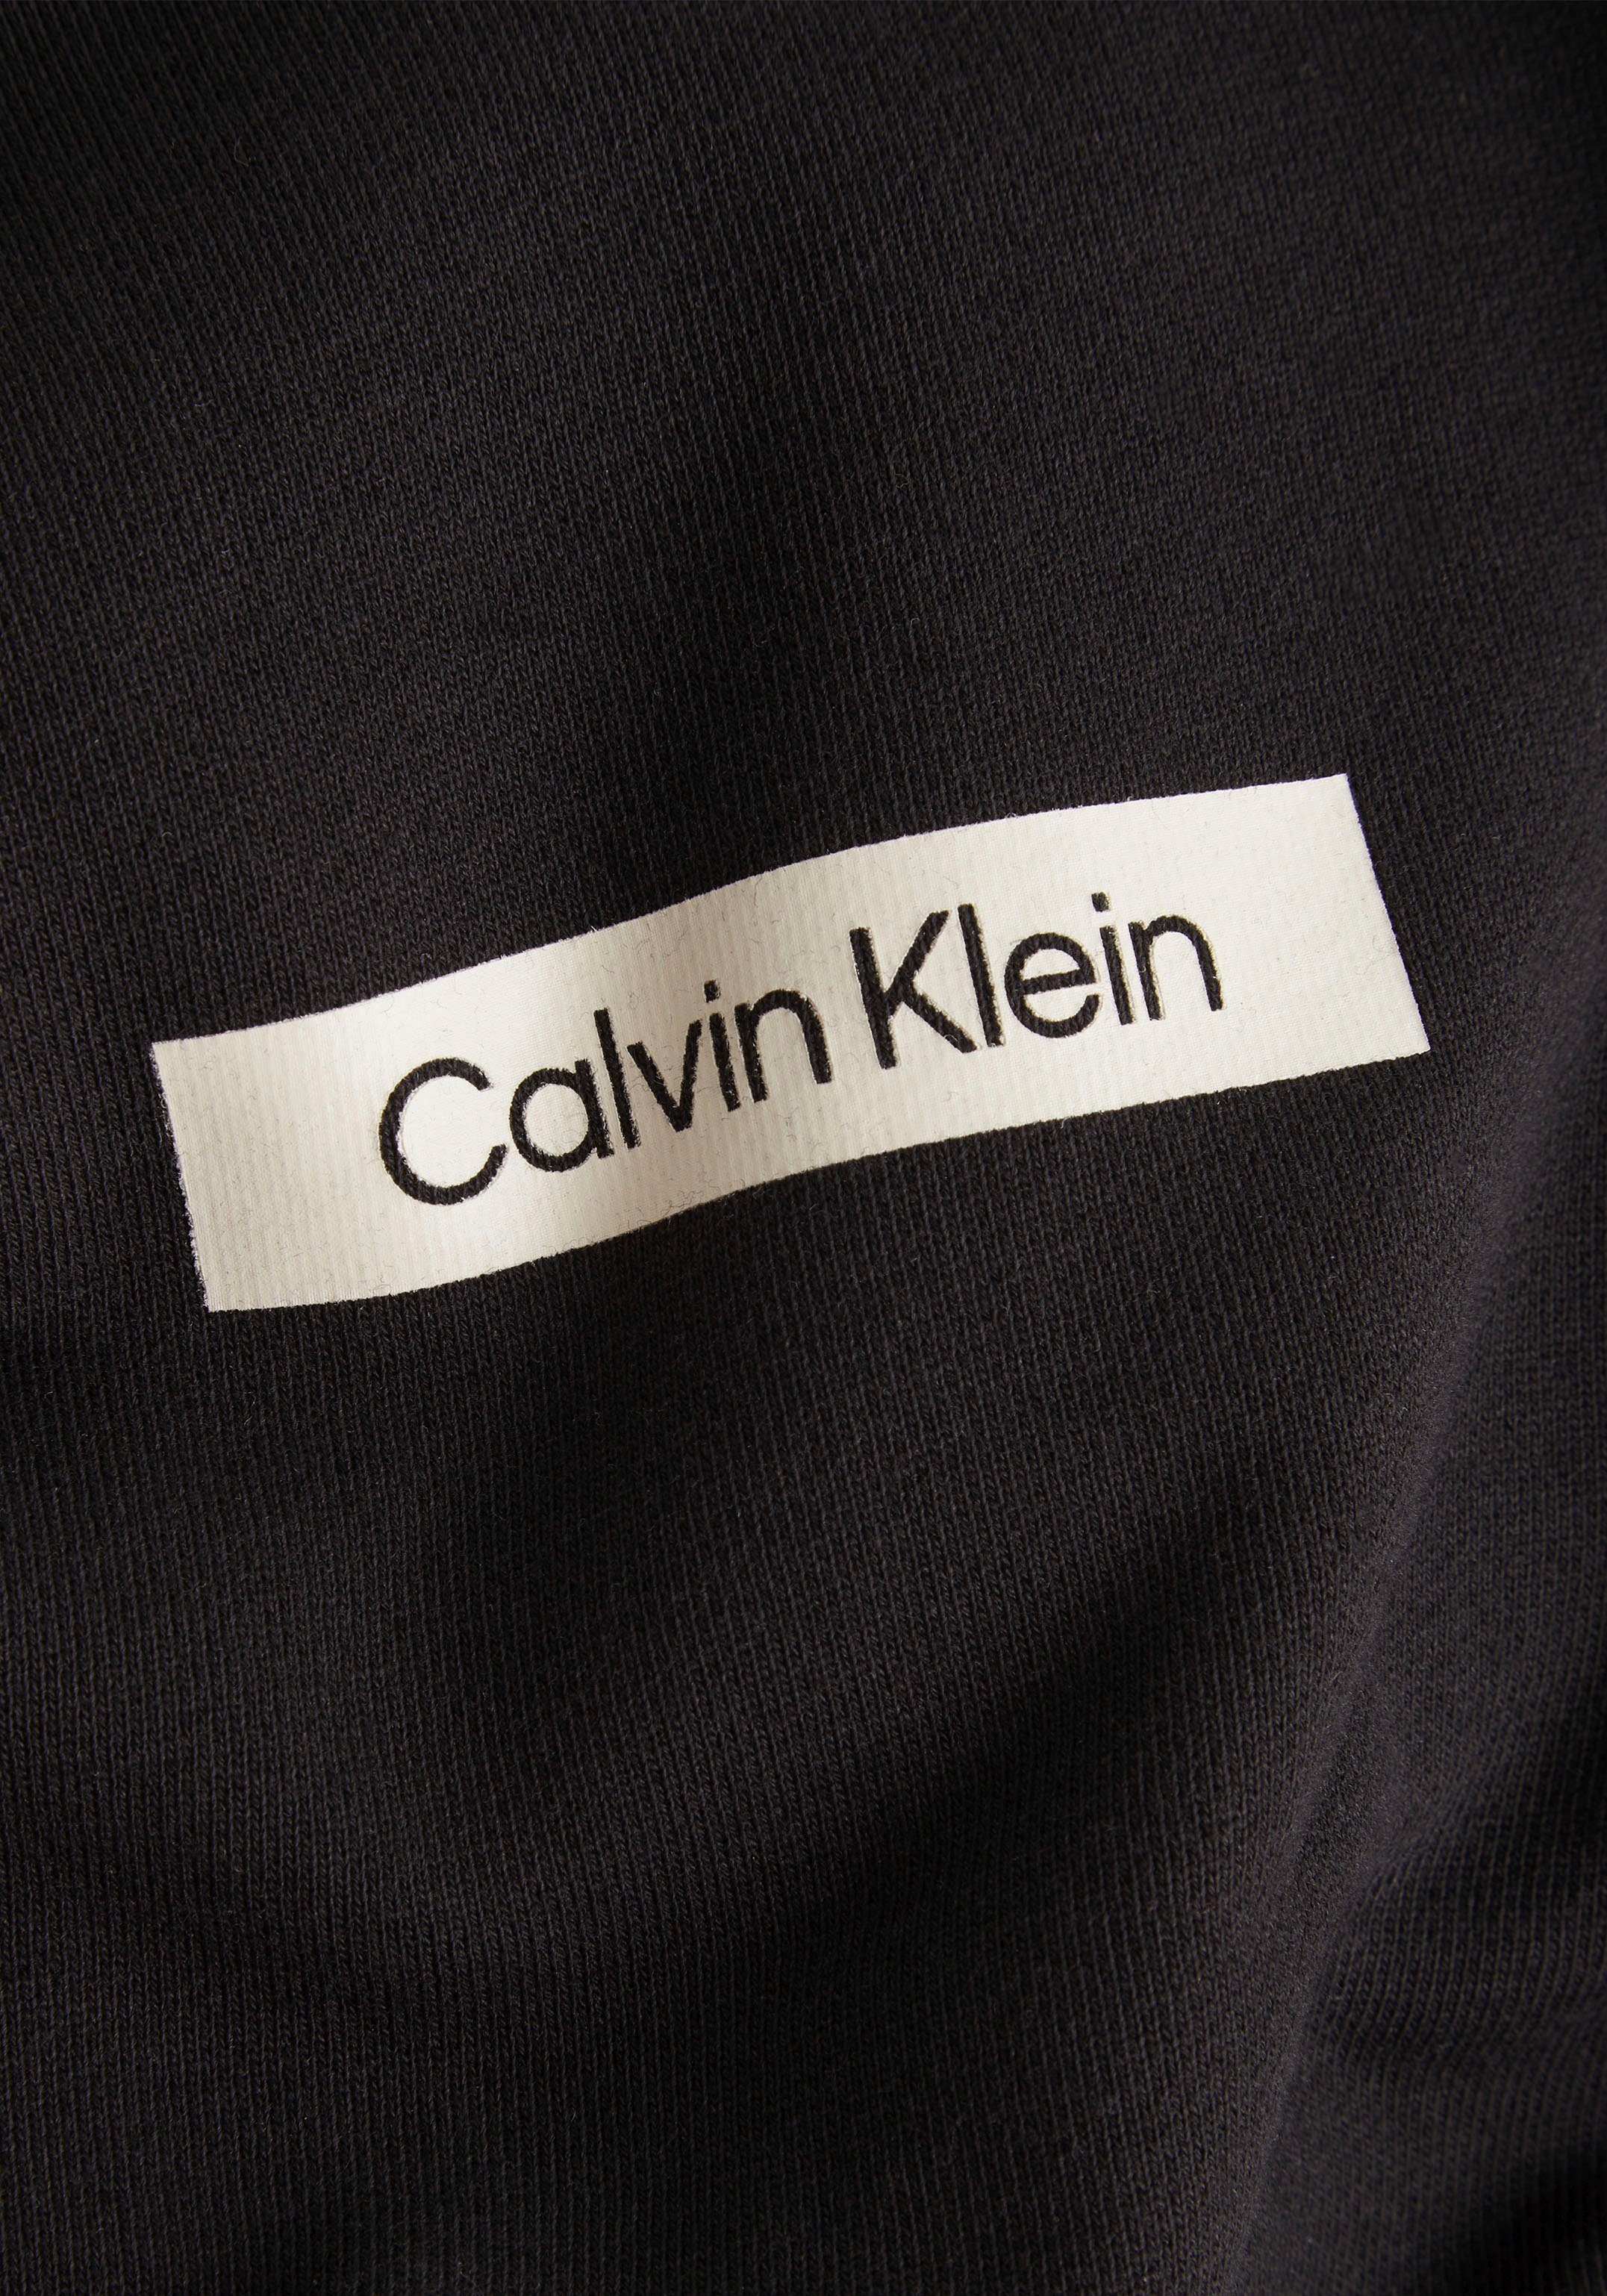 dem Calvin Klein großem mit Rücken auf schwarz Kapuzensweatshirt CK-Schriftzug